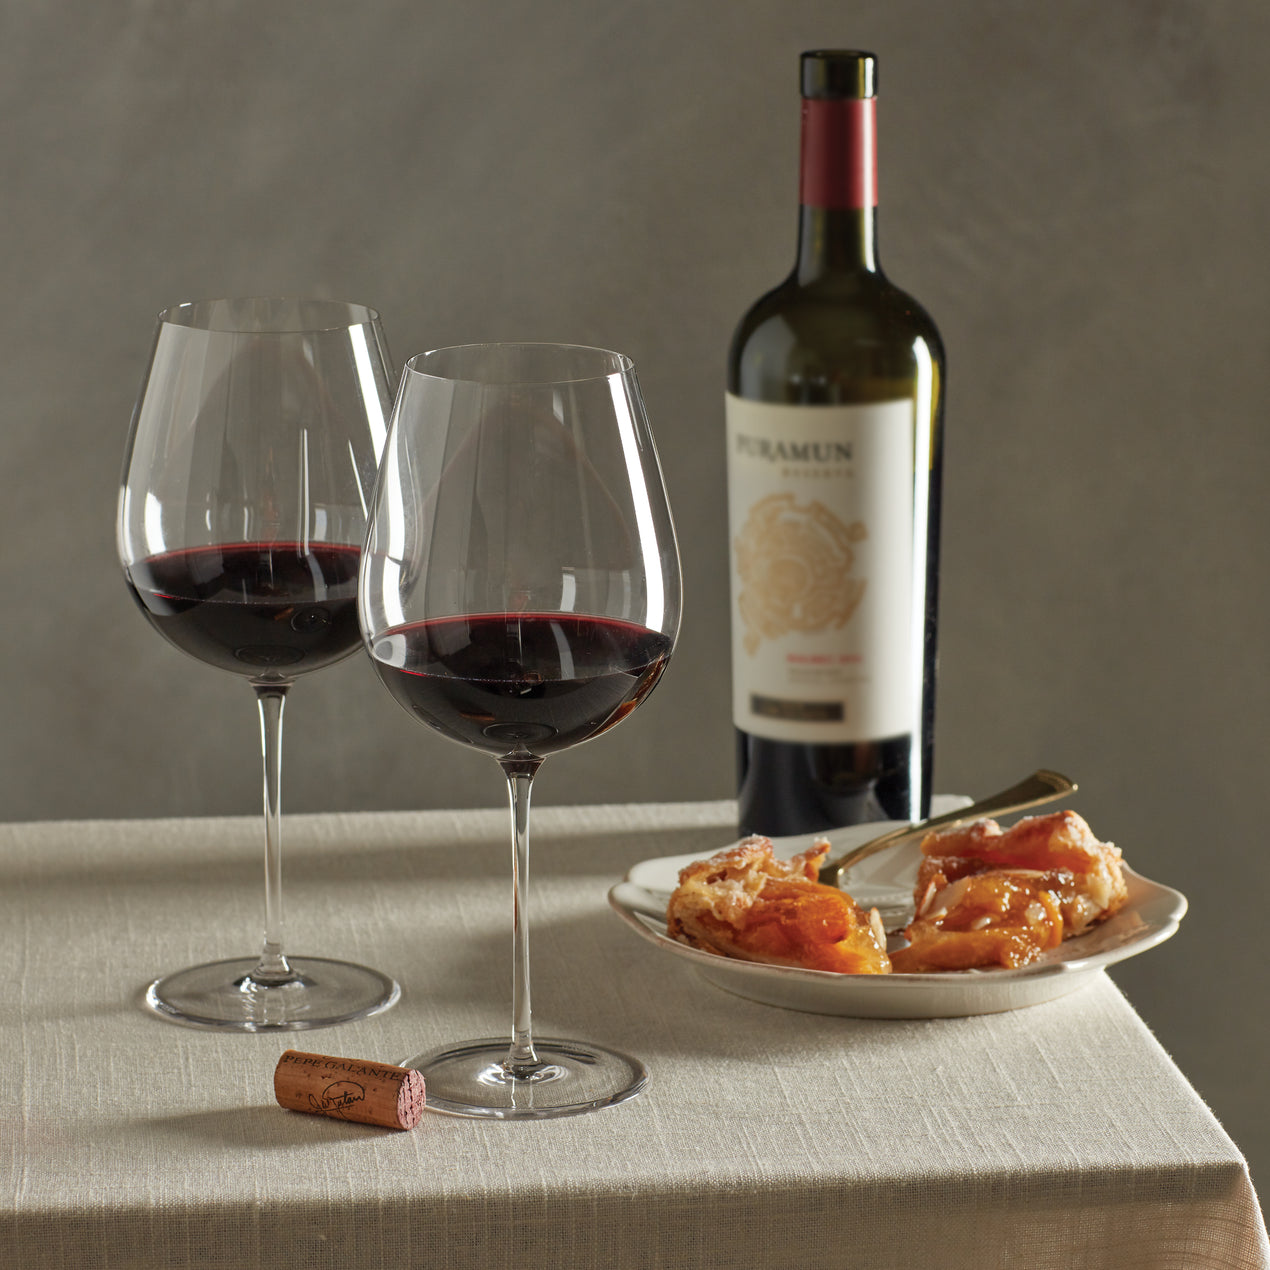 Set 6 wine glasses - RED POPPIES - Tenuta Casanova